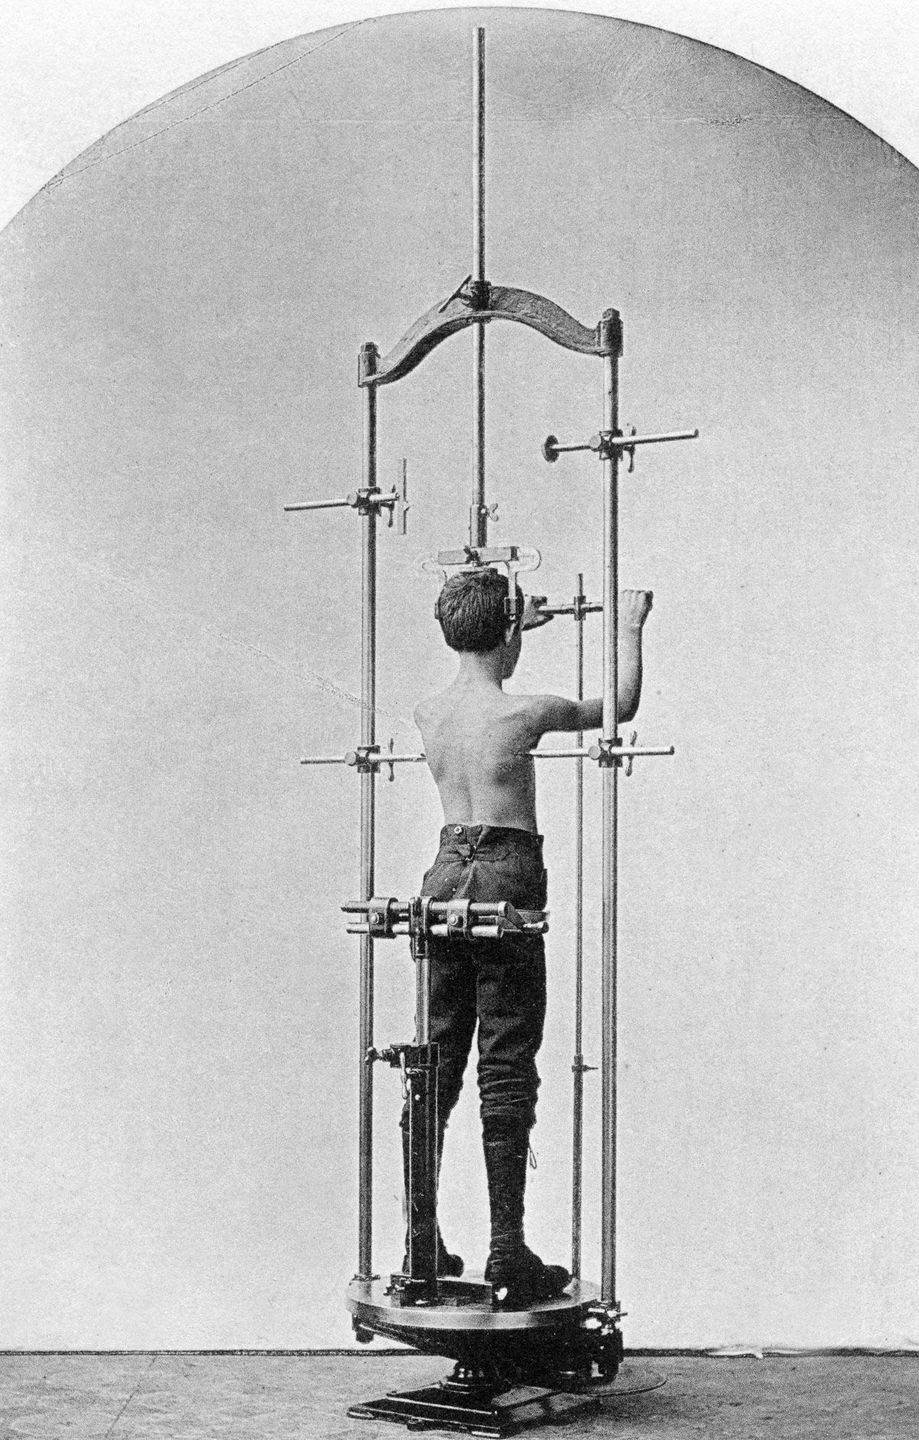 Cỗ máy tập gym của con người 100 năm trước